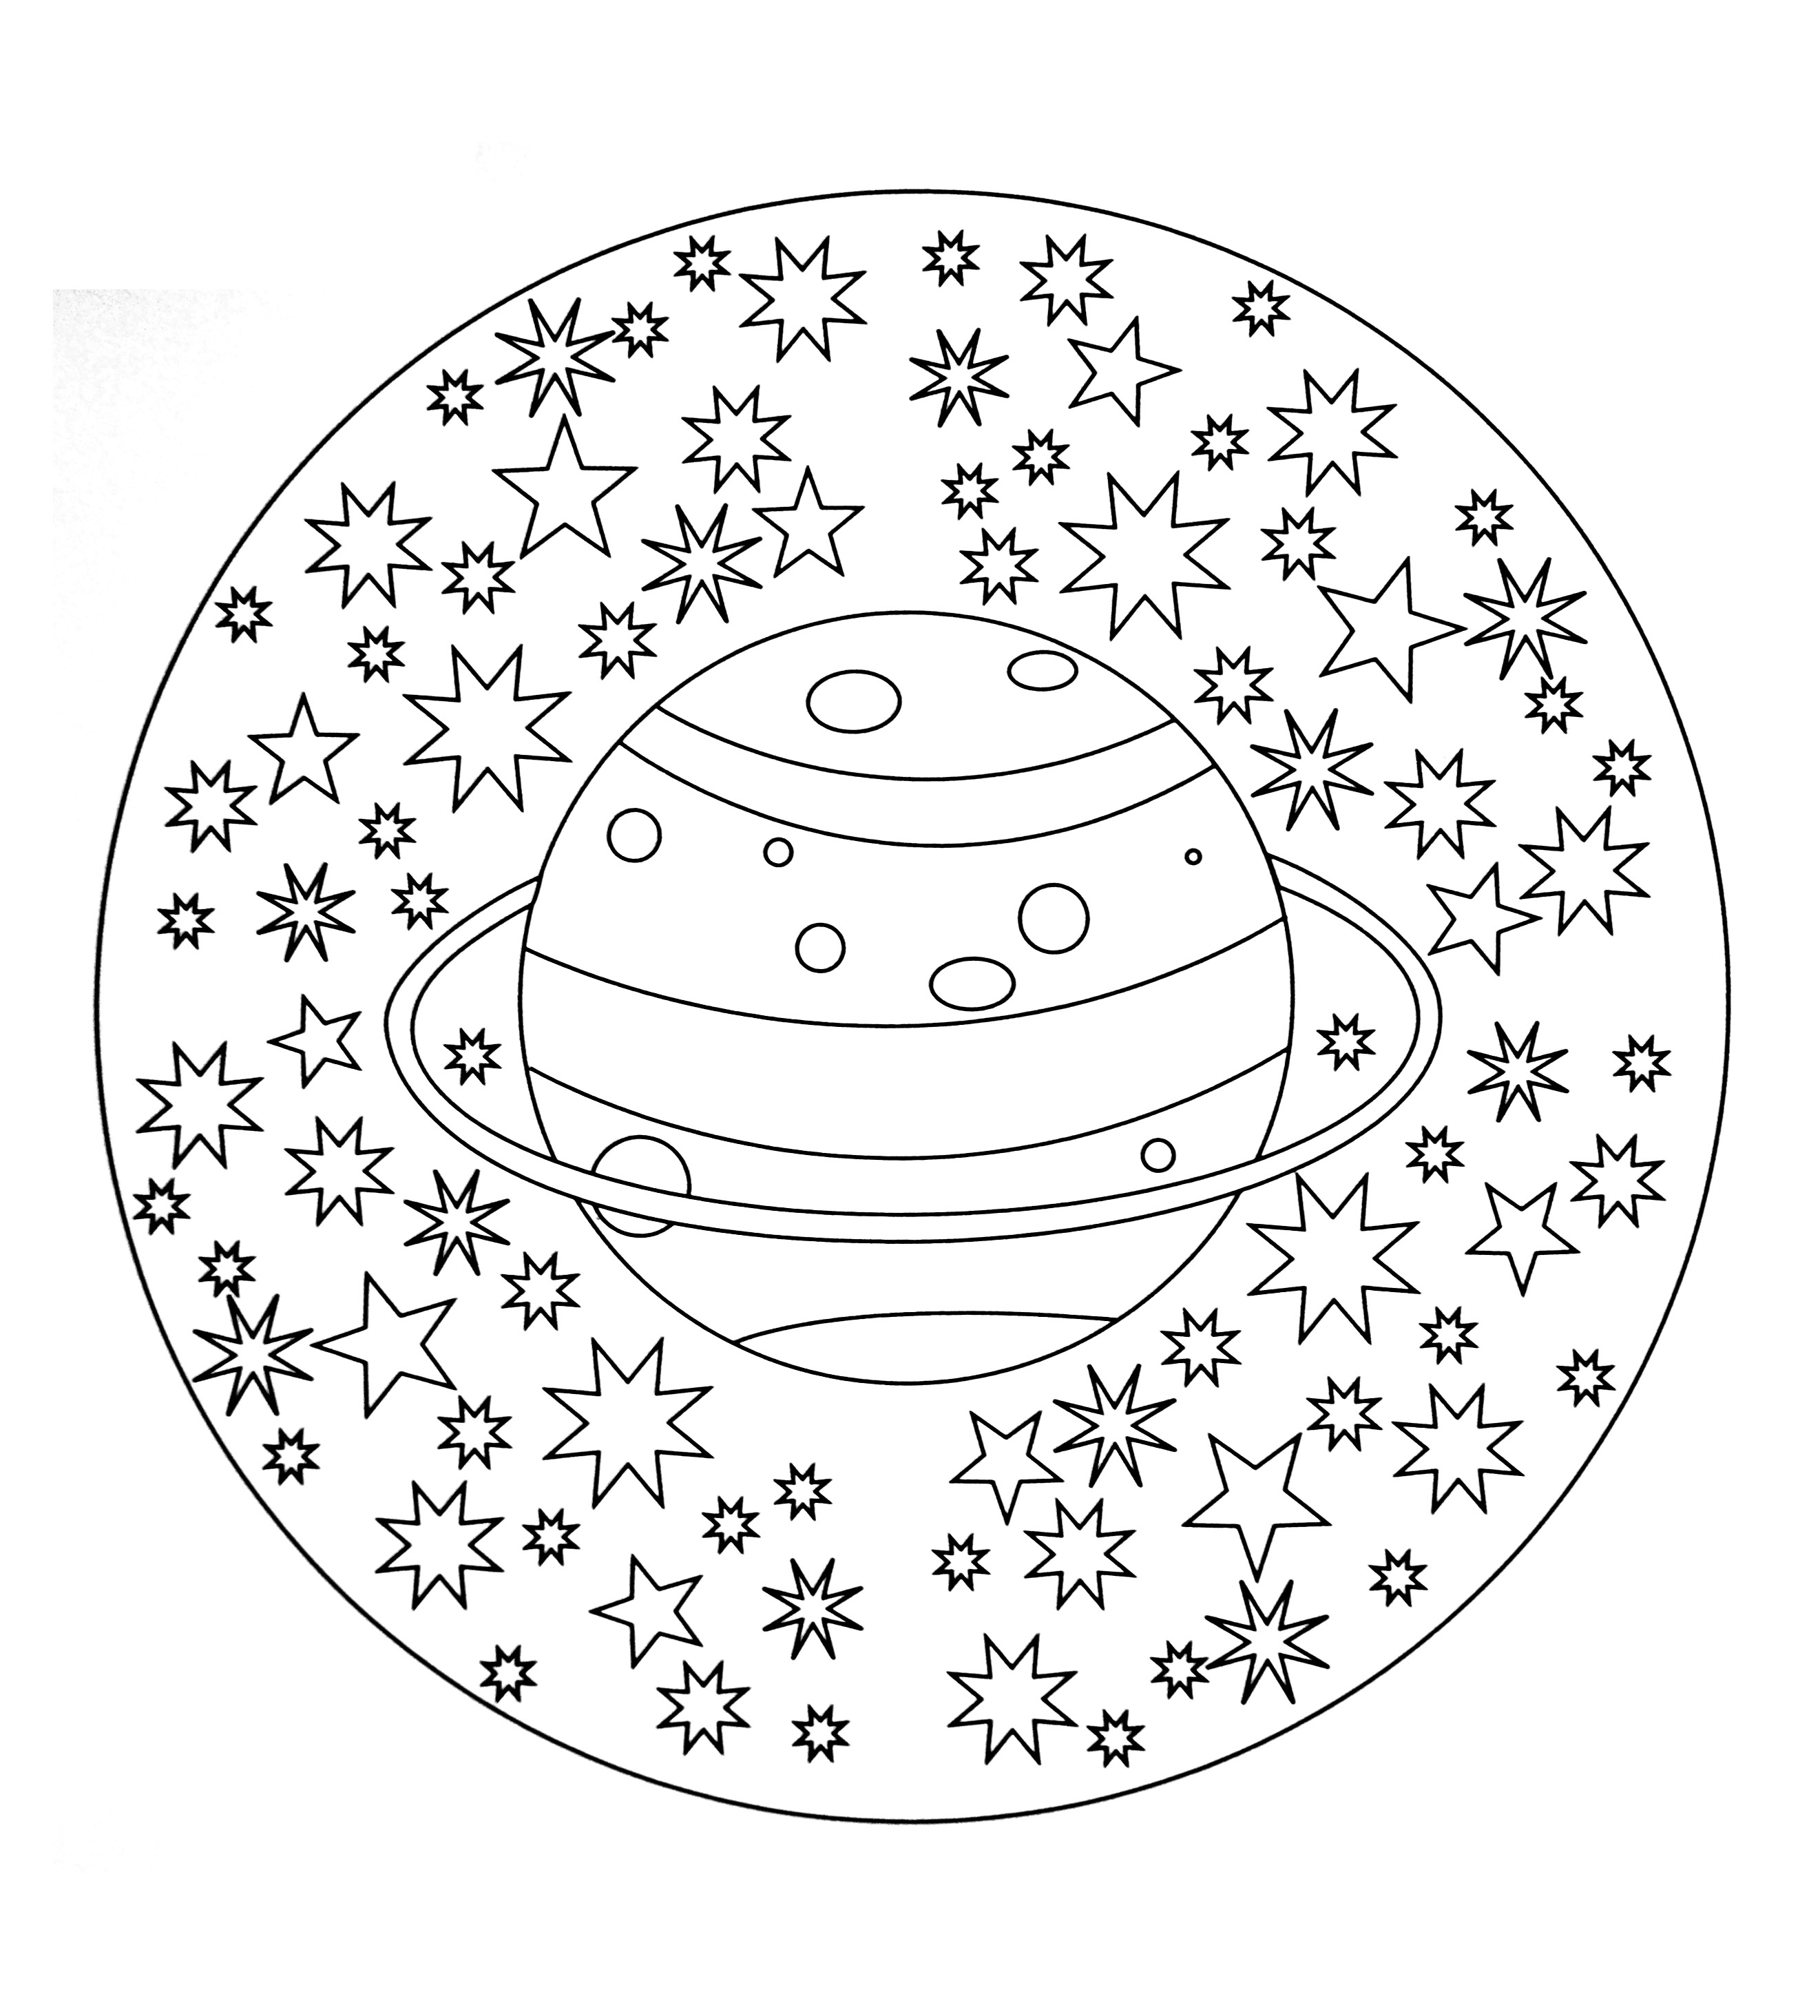 Wunderschönes Mandala, das den Planeten 'Saturn' mit einem schönen Sternenhimmel darstellt. Sehr einfach zum Ausmalen.